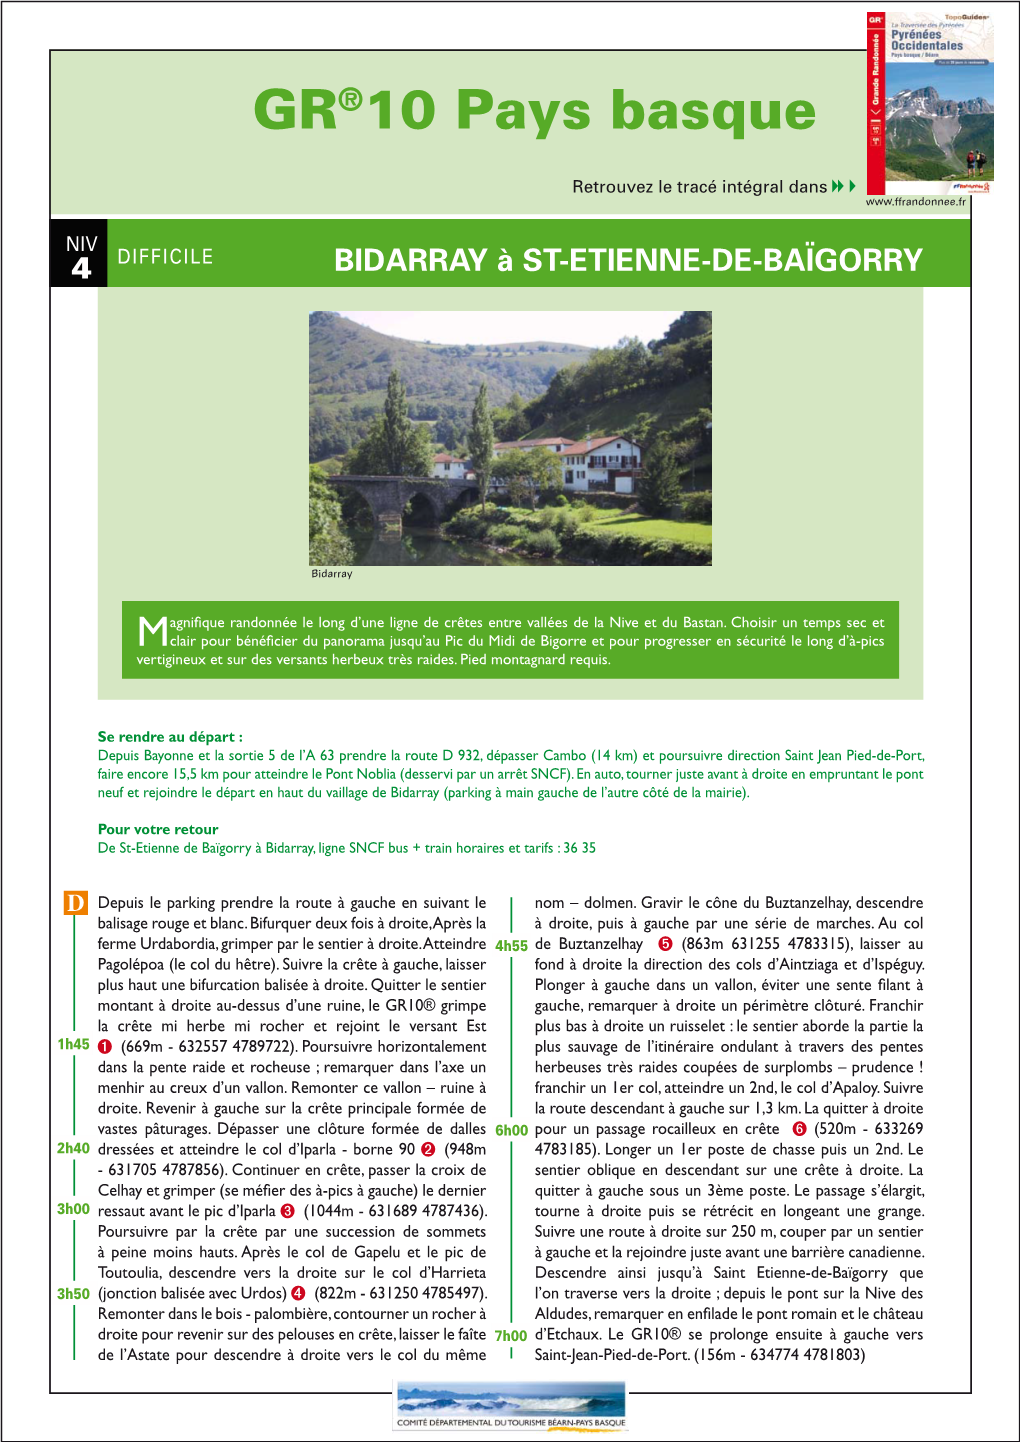 Bidarray À St-Etienne-De-Baïgorry